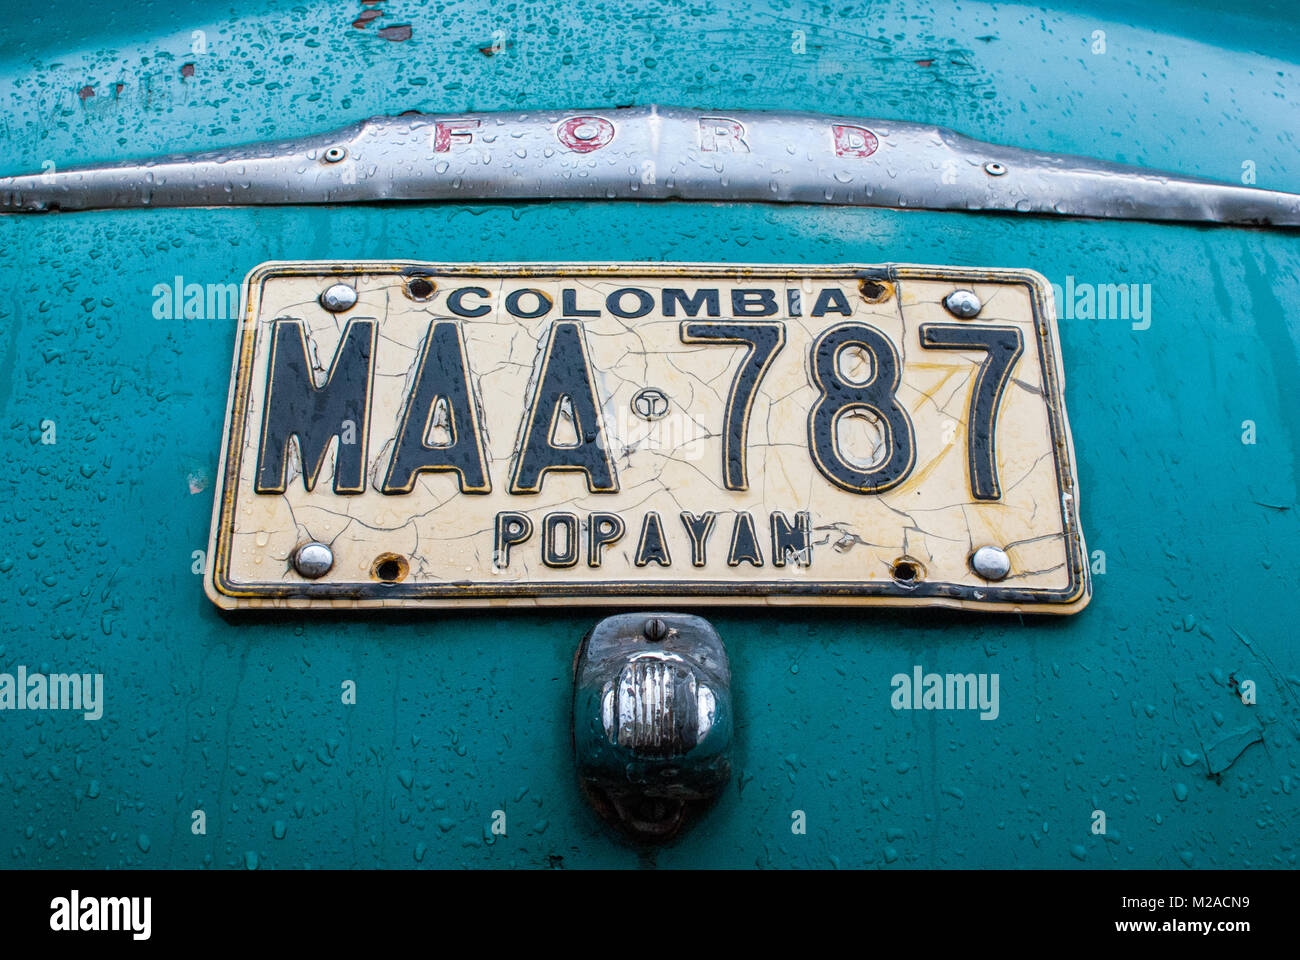 L'licenseplate d'une voiture classique recouverte de gouttes de pluie dans la région de Silvia, Colombie Banque D'Images